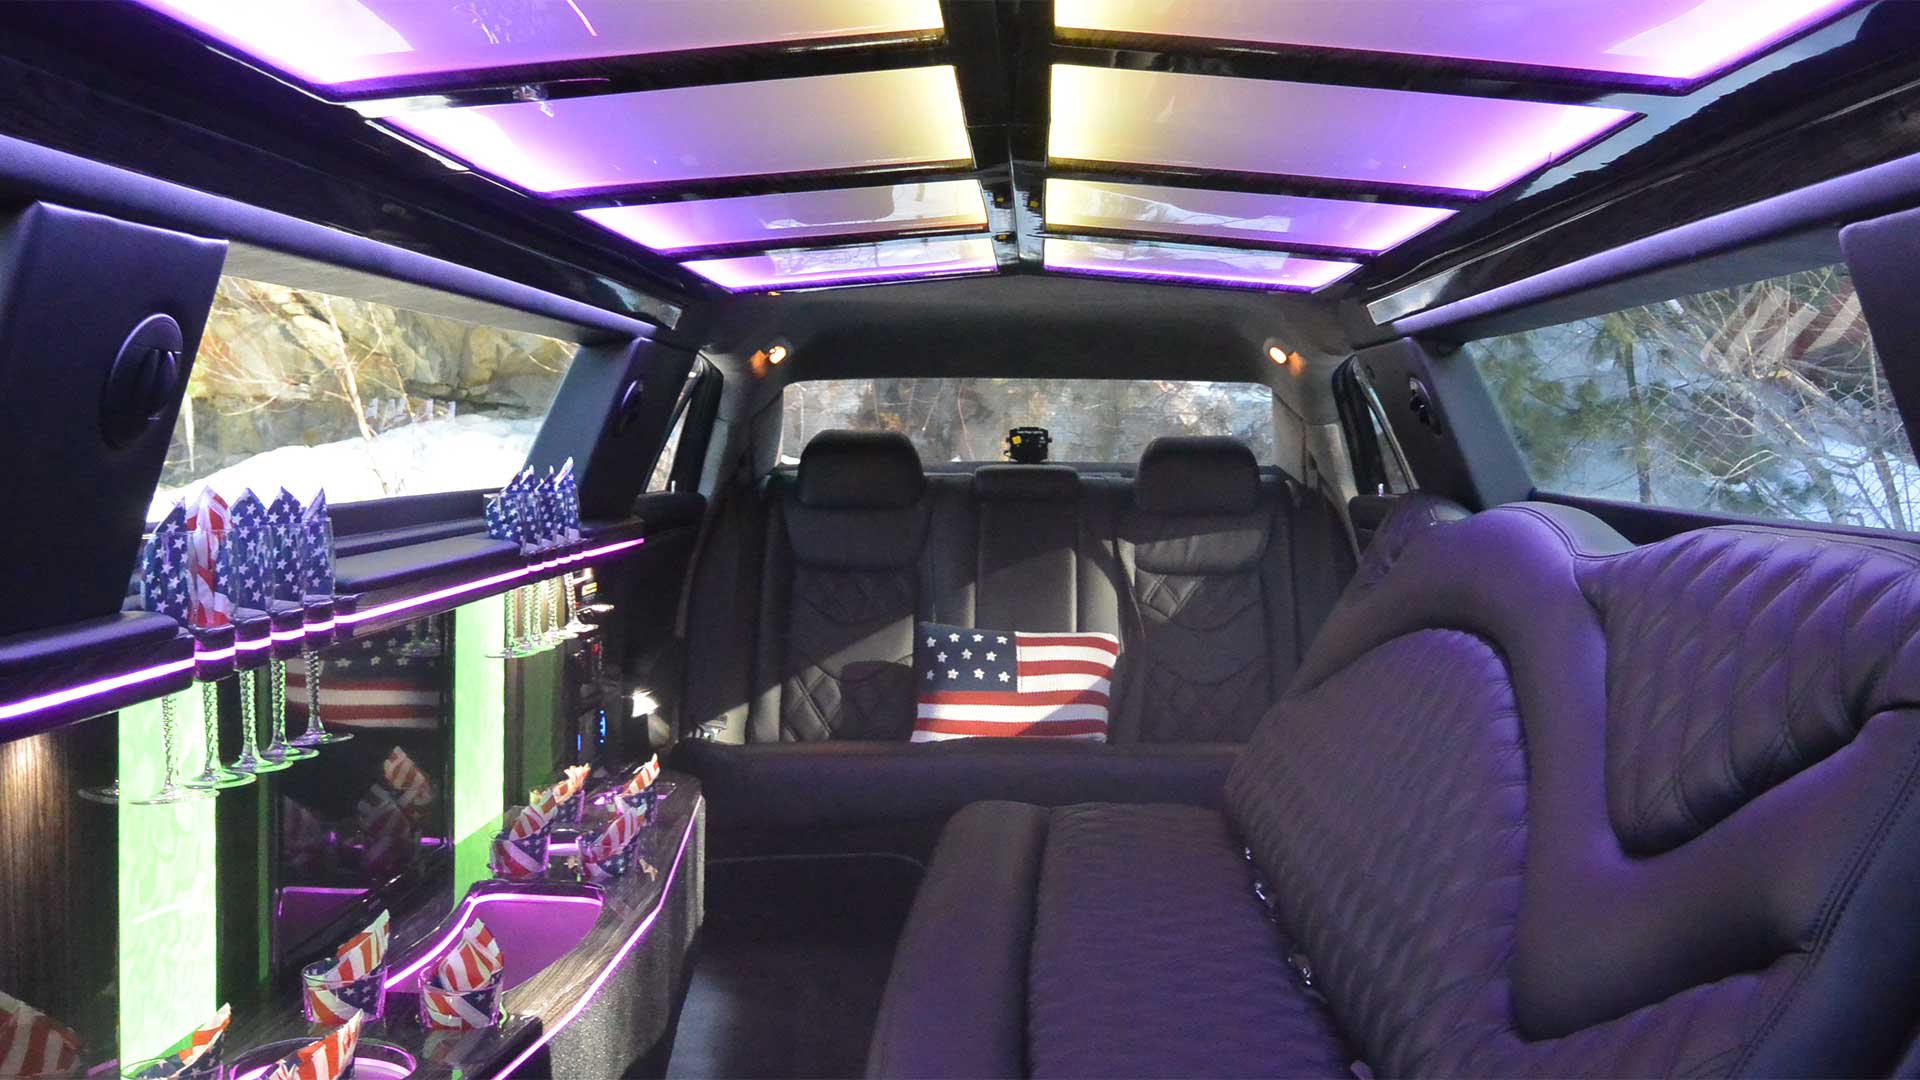 Stretch limo interior